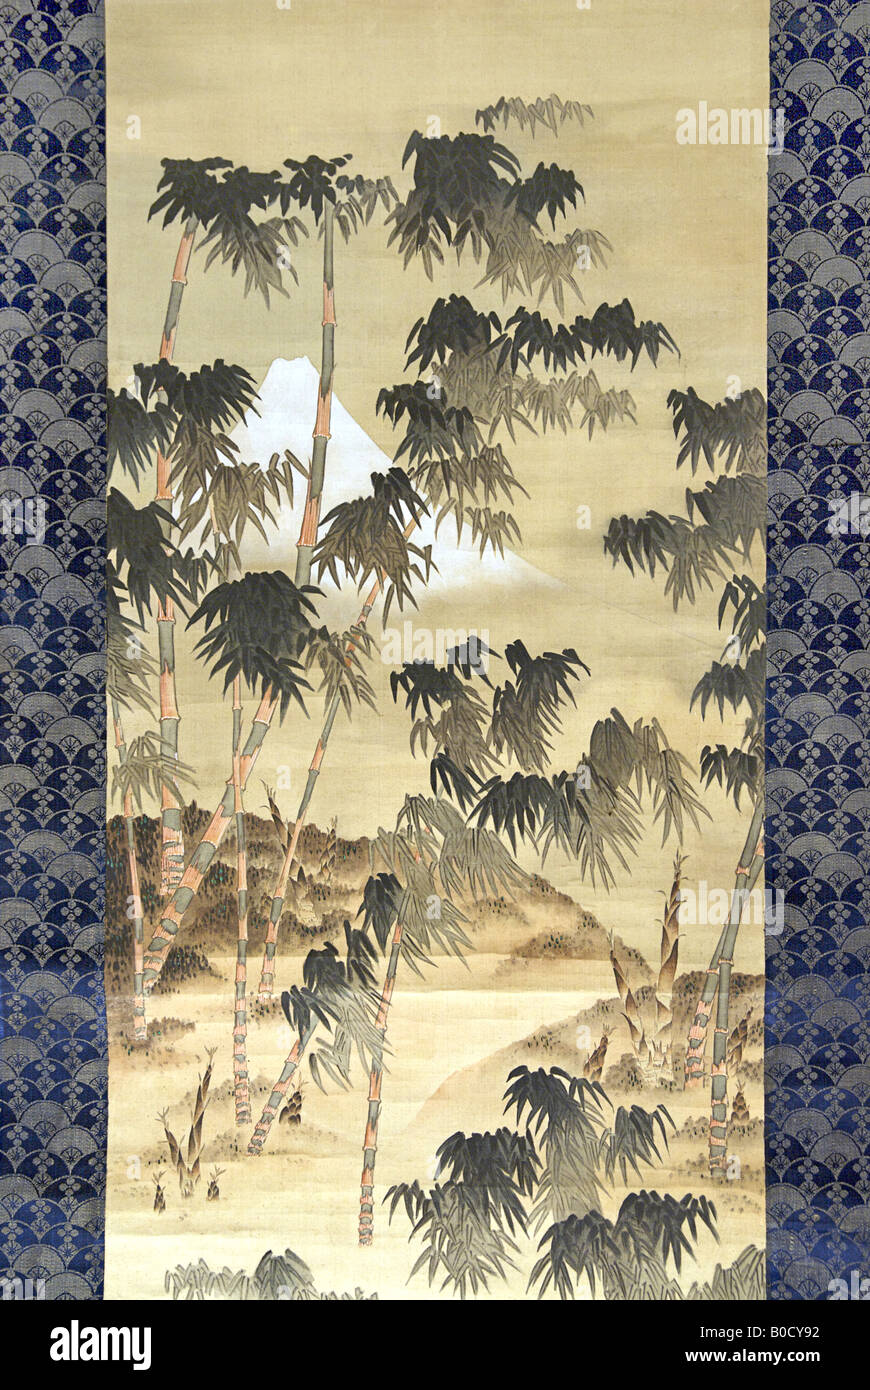 MOUNT FUJI DURCH DEN BAMBUS-HAIN. Detail eines Gemäldes auf Seide von Katsushika Hokusai Stockfoto